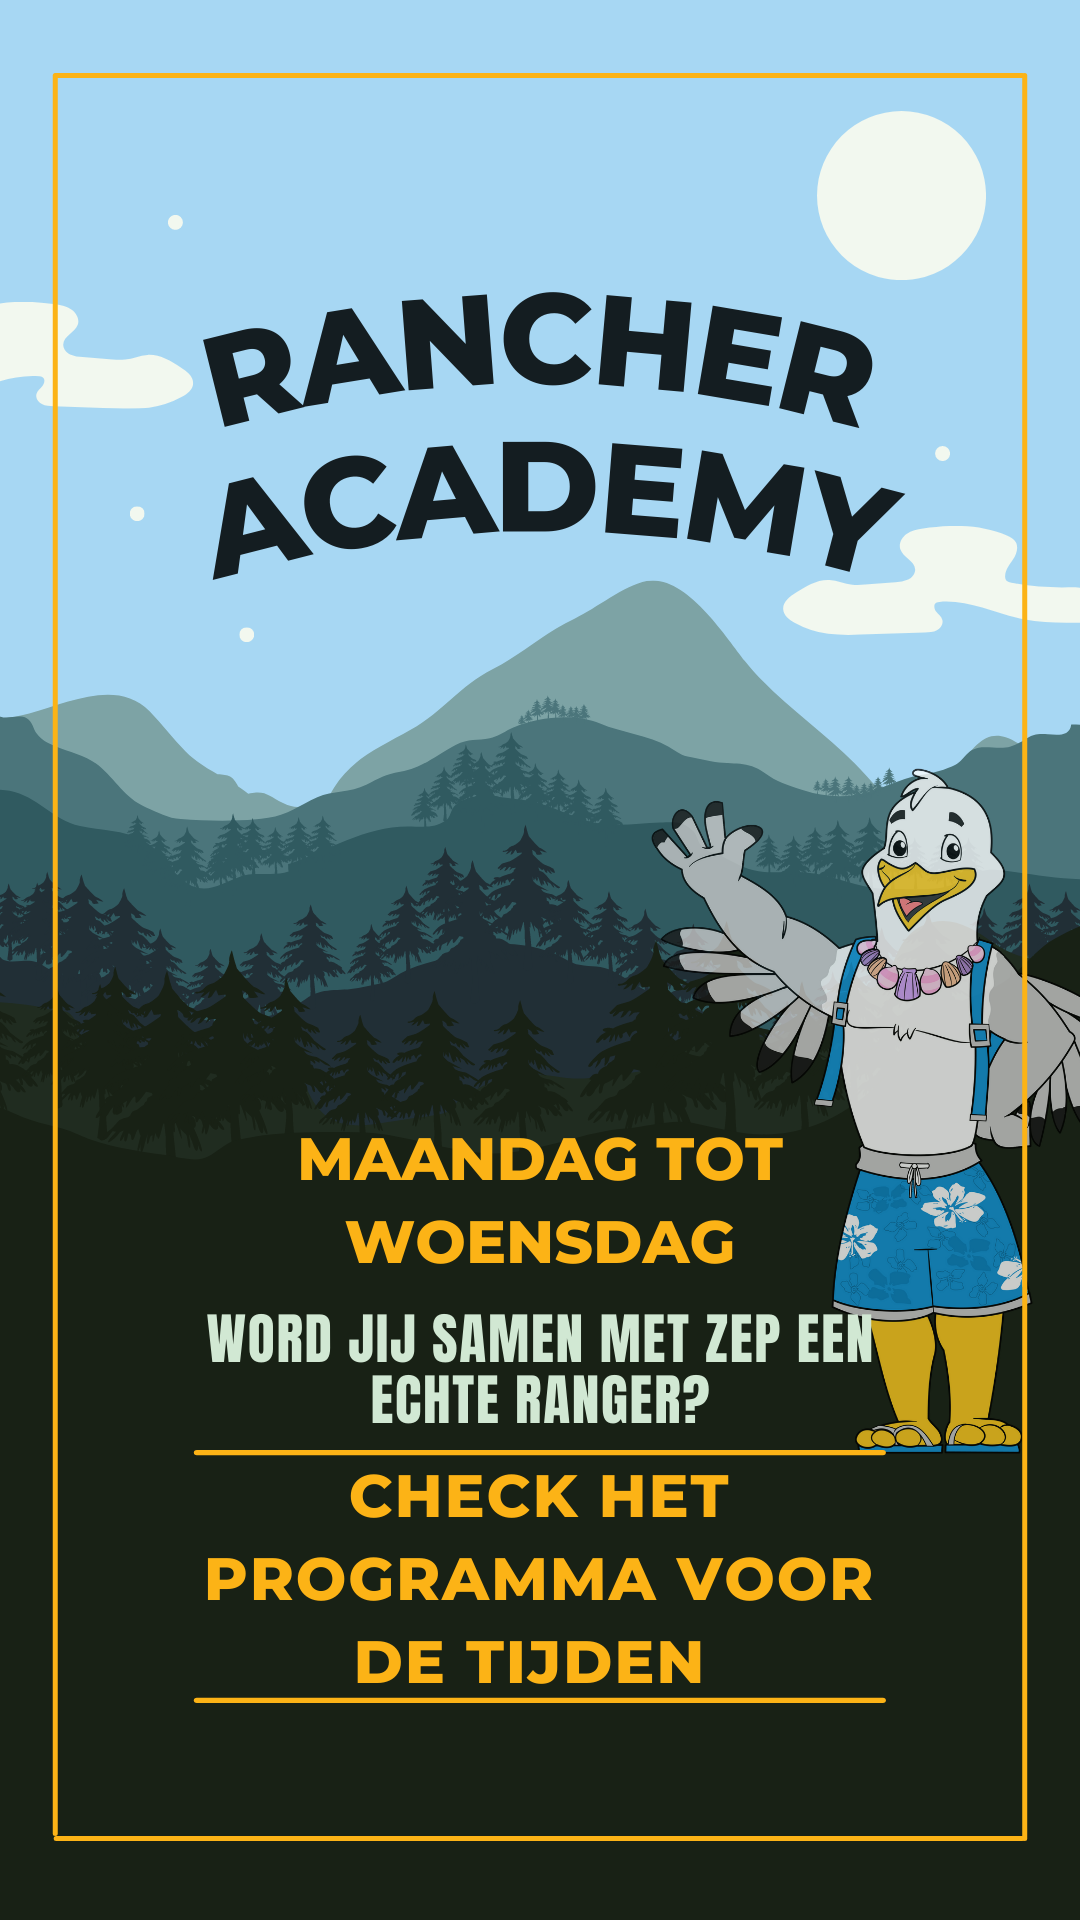 Ranger academy _ Meivakantie